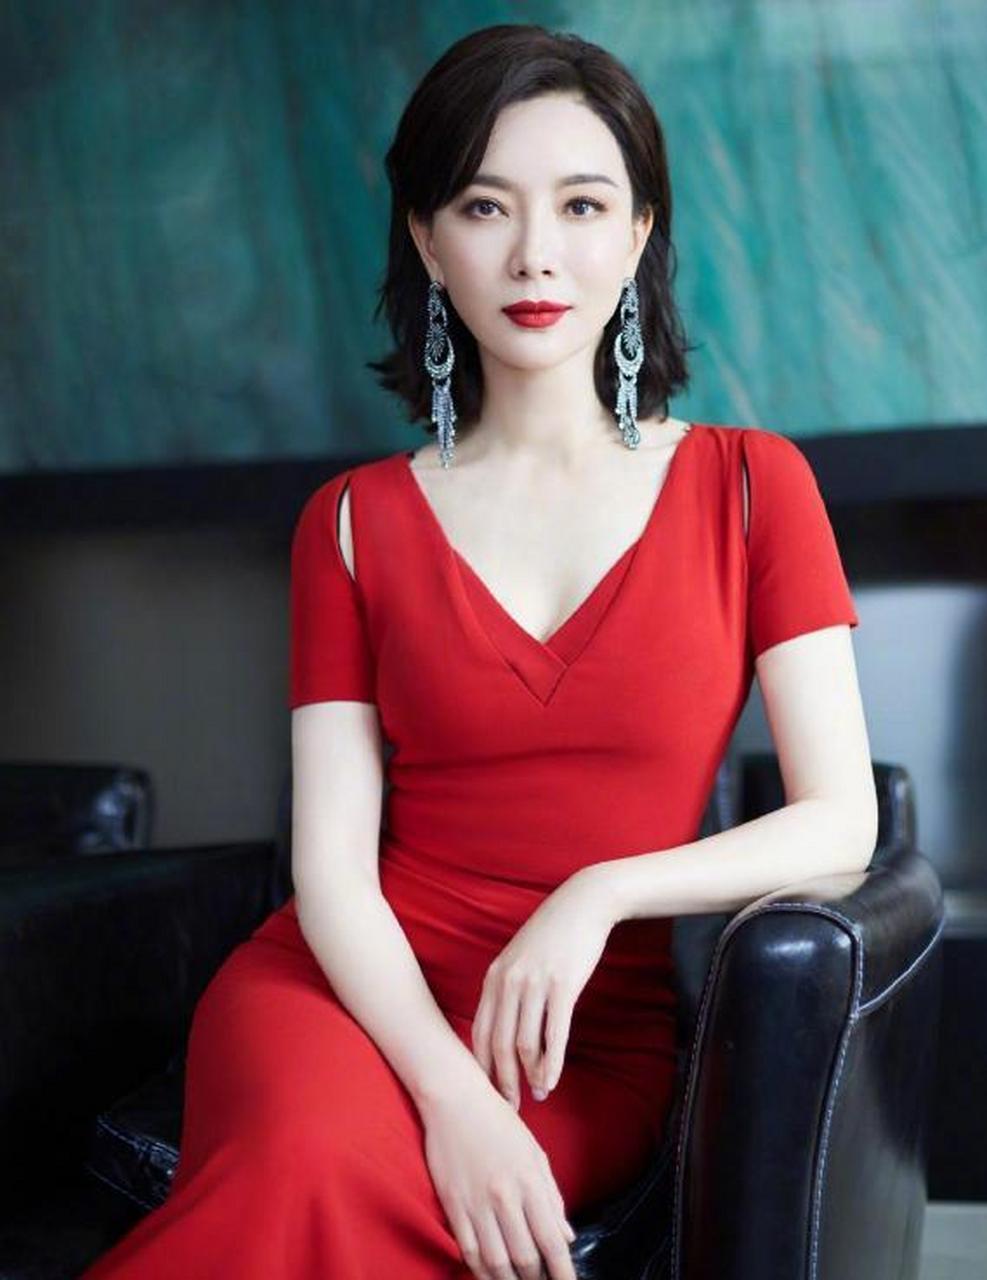 2018年,雷佳音和陈数在拍电视剧《和平饭店》中有一段深情吻戏,雷佳音